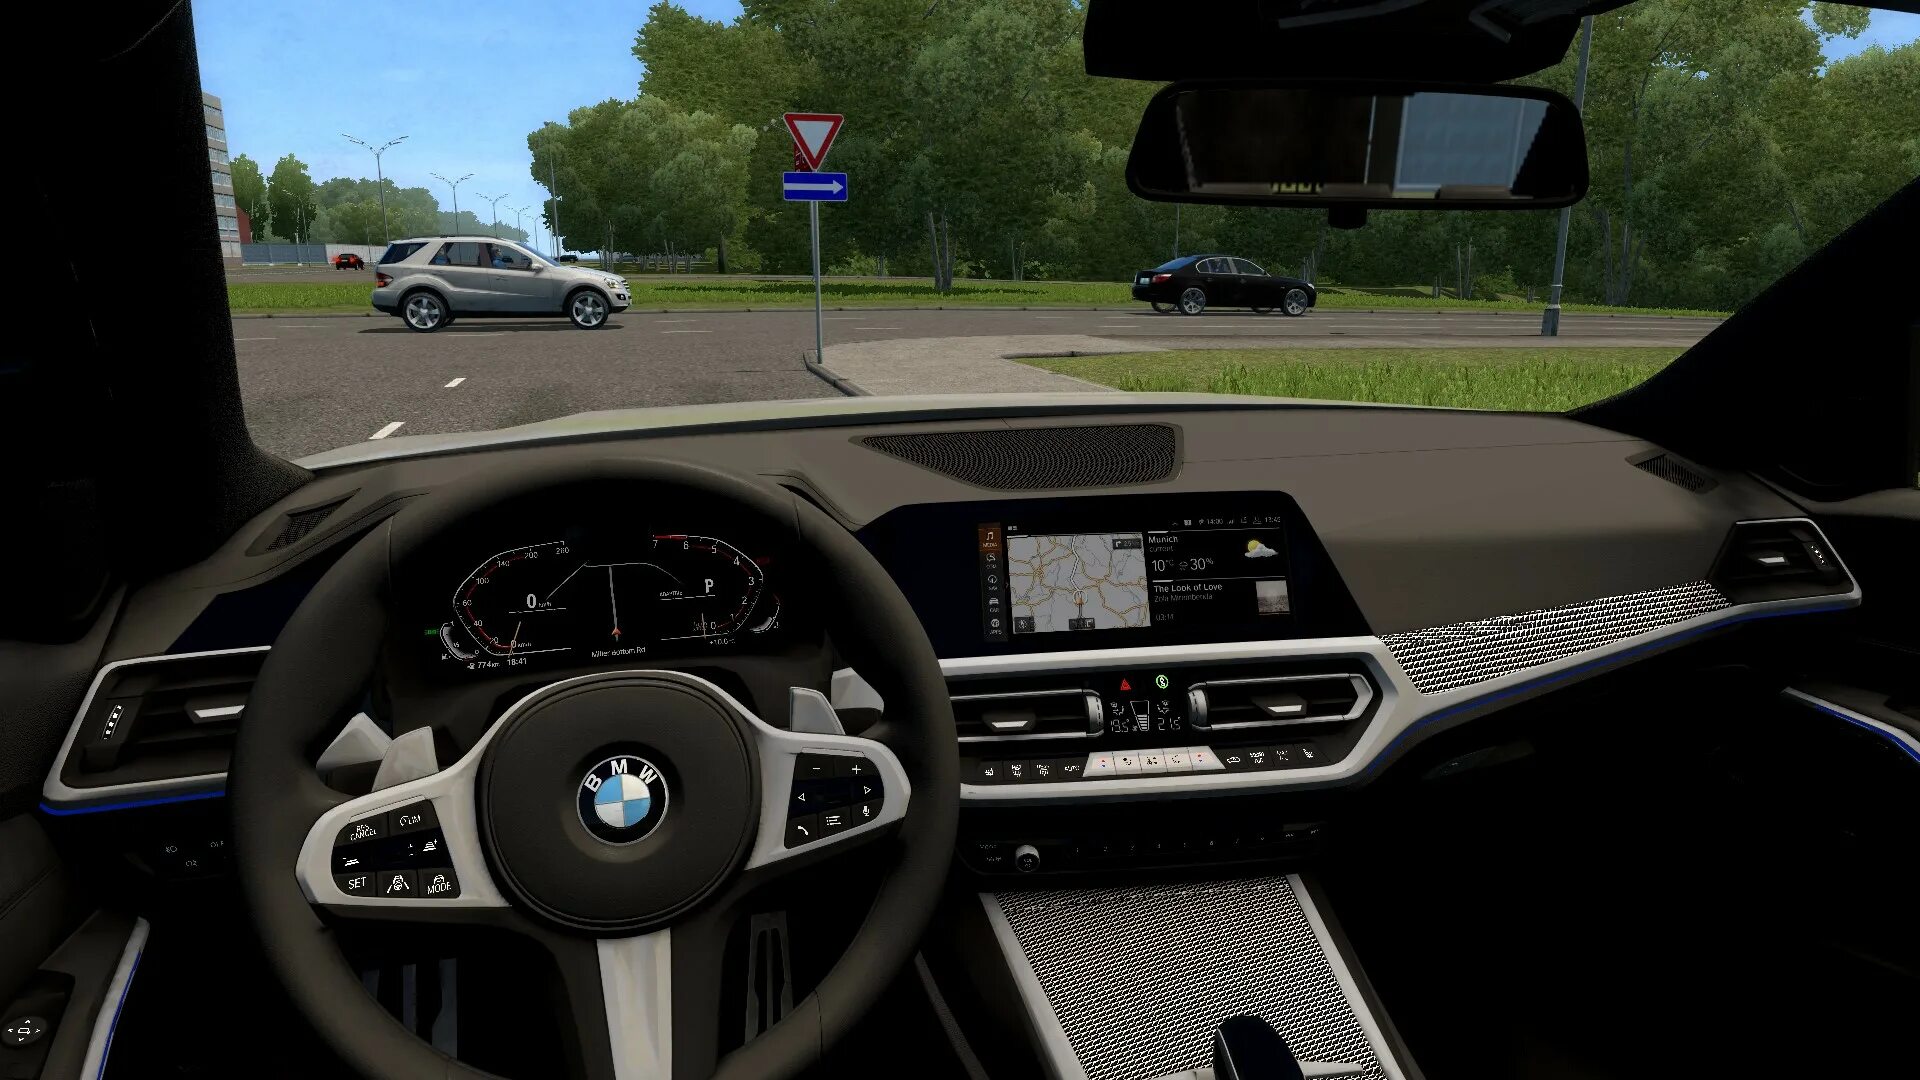 BMW 320 D City car Driving. BMW f30 для City car Driving. Мод на BMW e30 для City car Driving. BMW 320d m-Sport (g20) 2019 версия 11.01.22 для City car Driving.